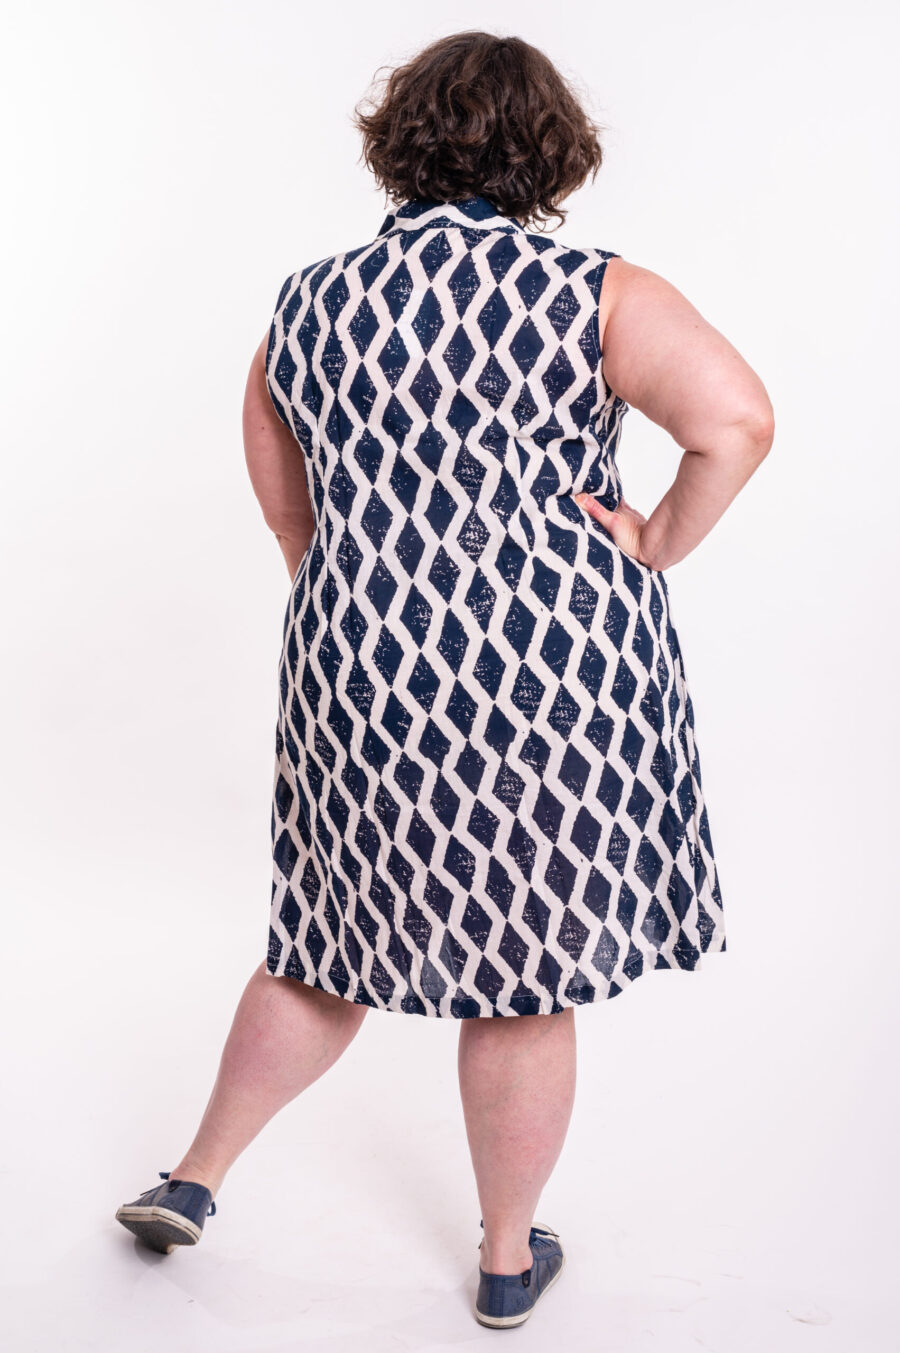 שמלת עופר | שמלה בעיצוב ייחודי – שמלת מידי צבעונית עם הדפס כחול מעויינים